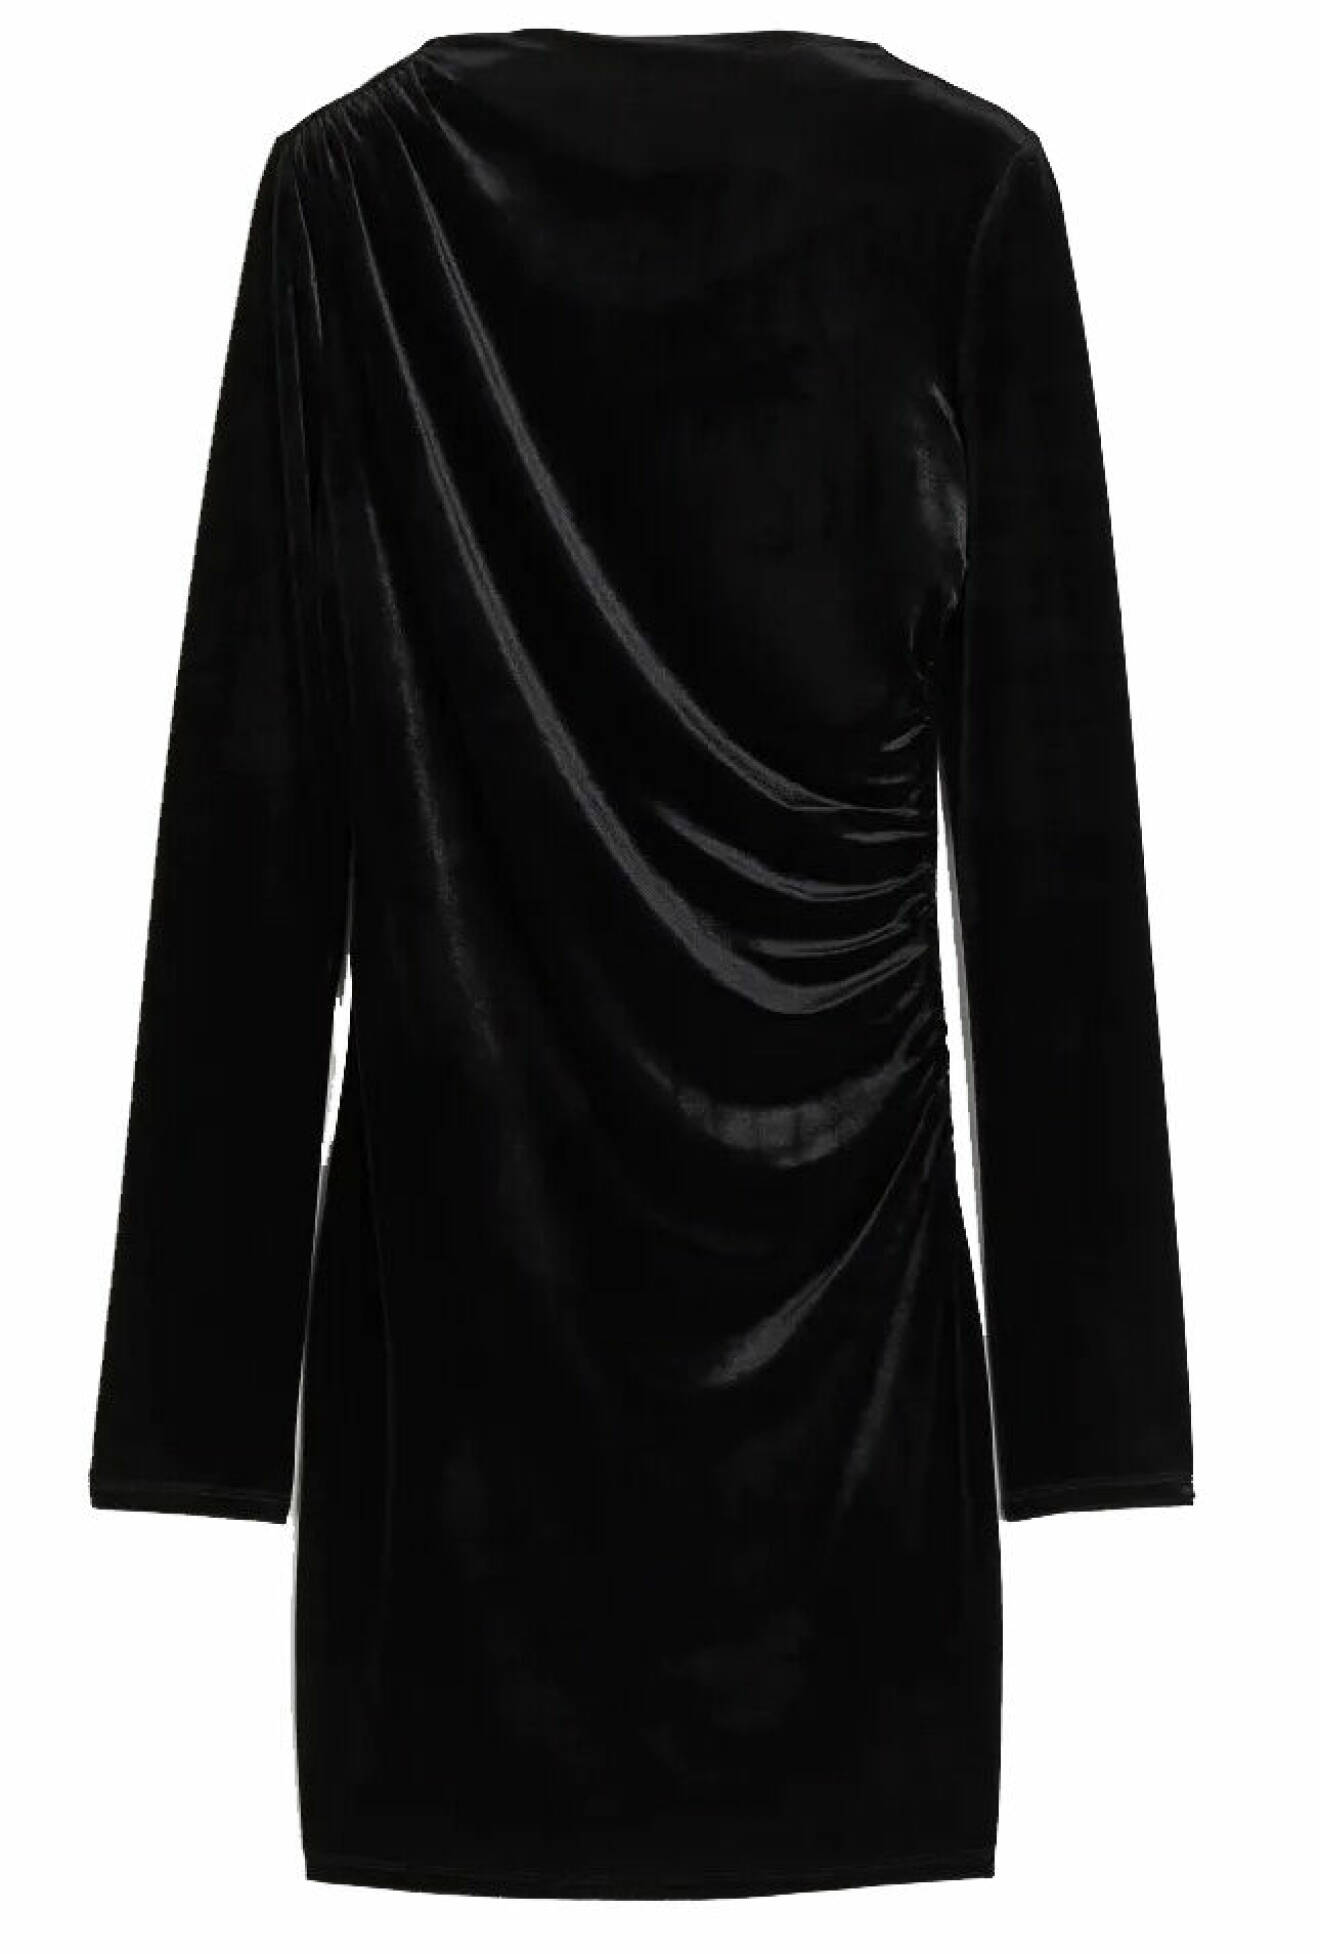 Klänning i svart sammet från hm. 